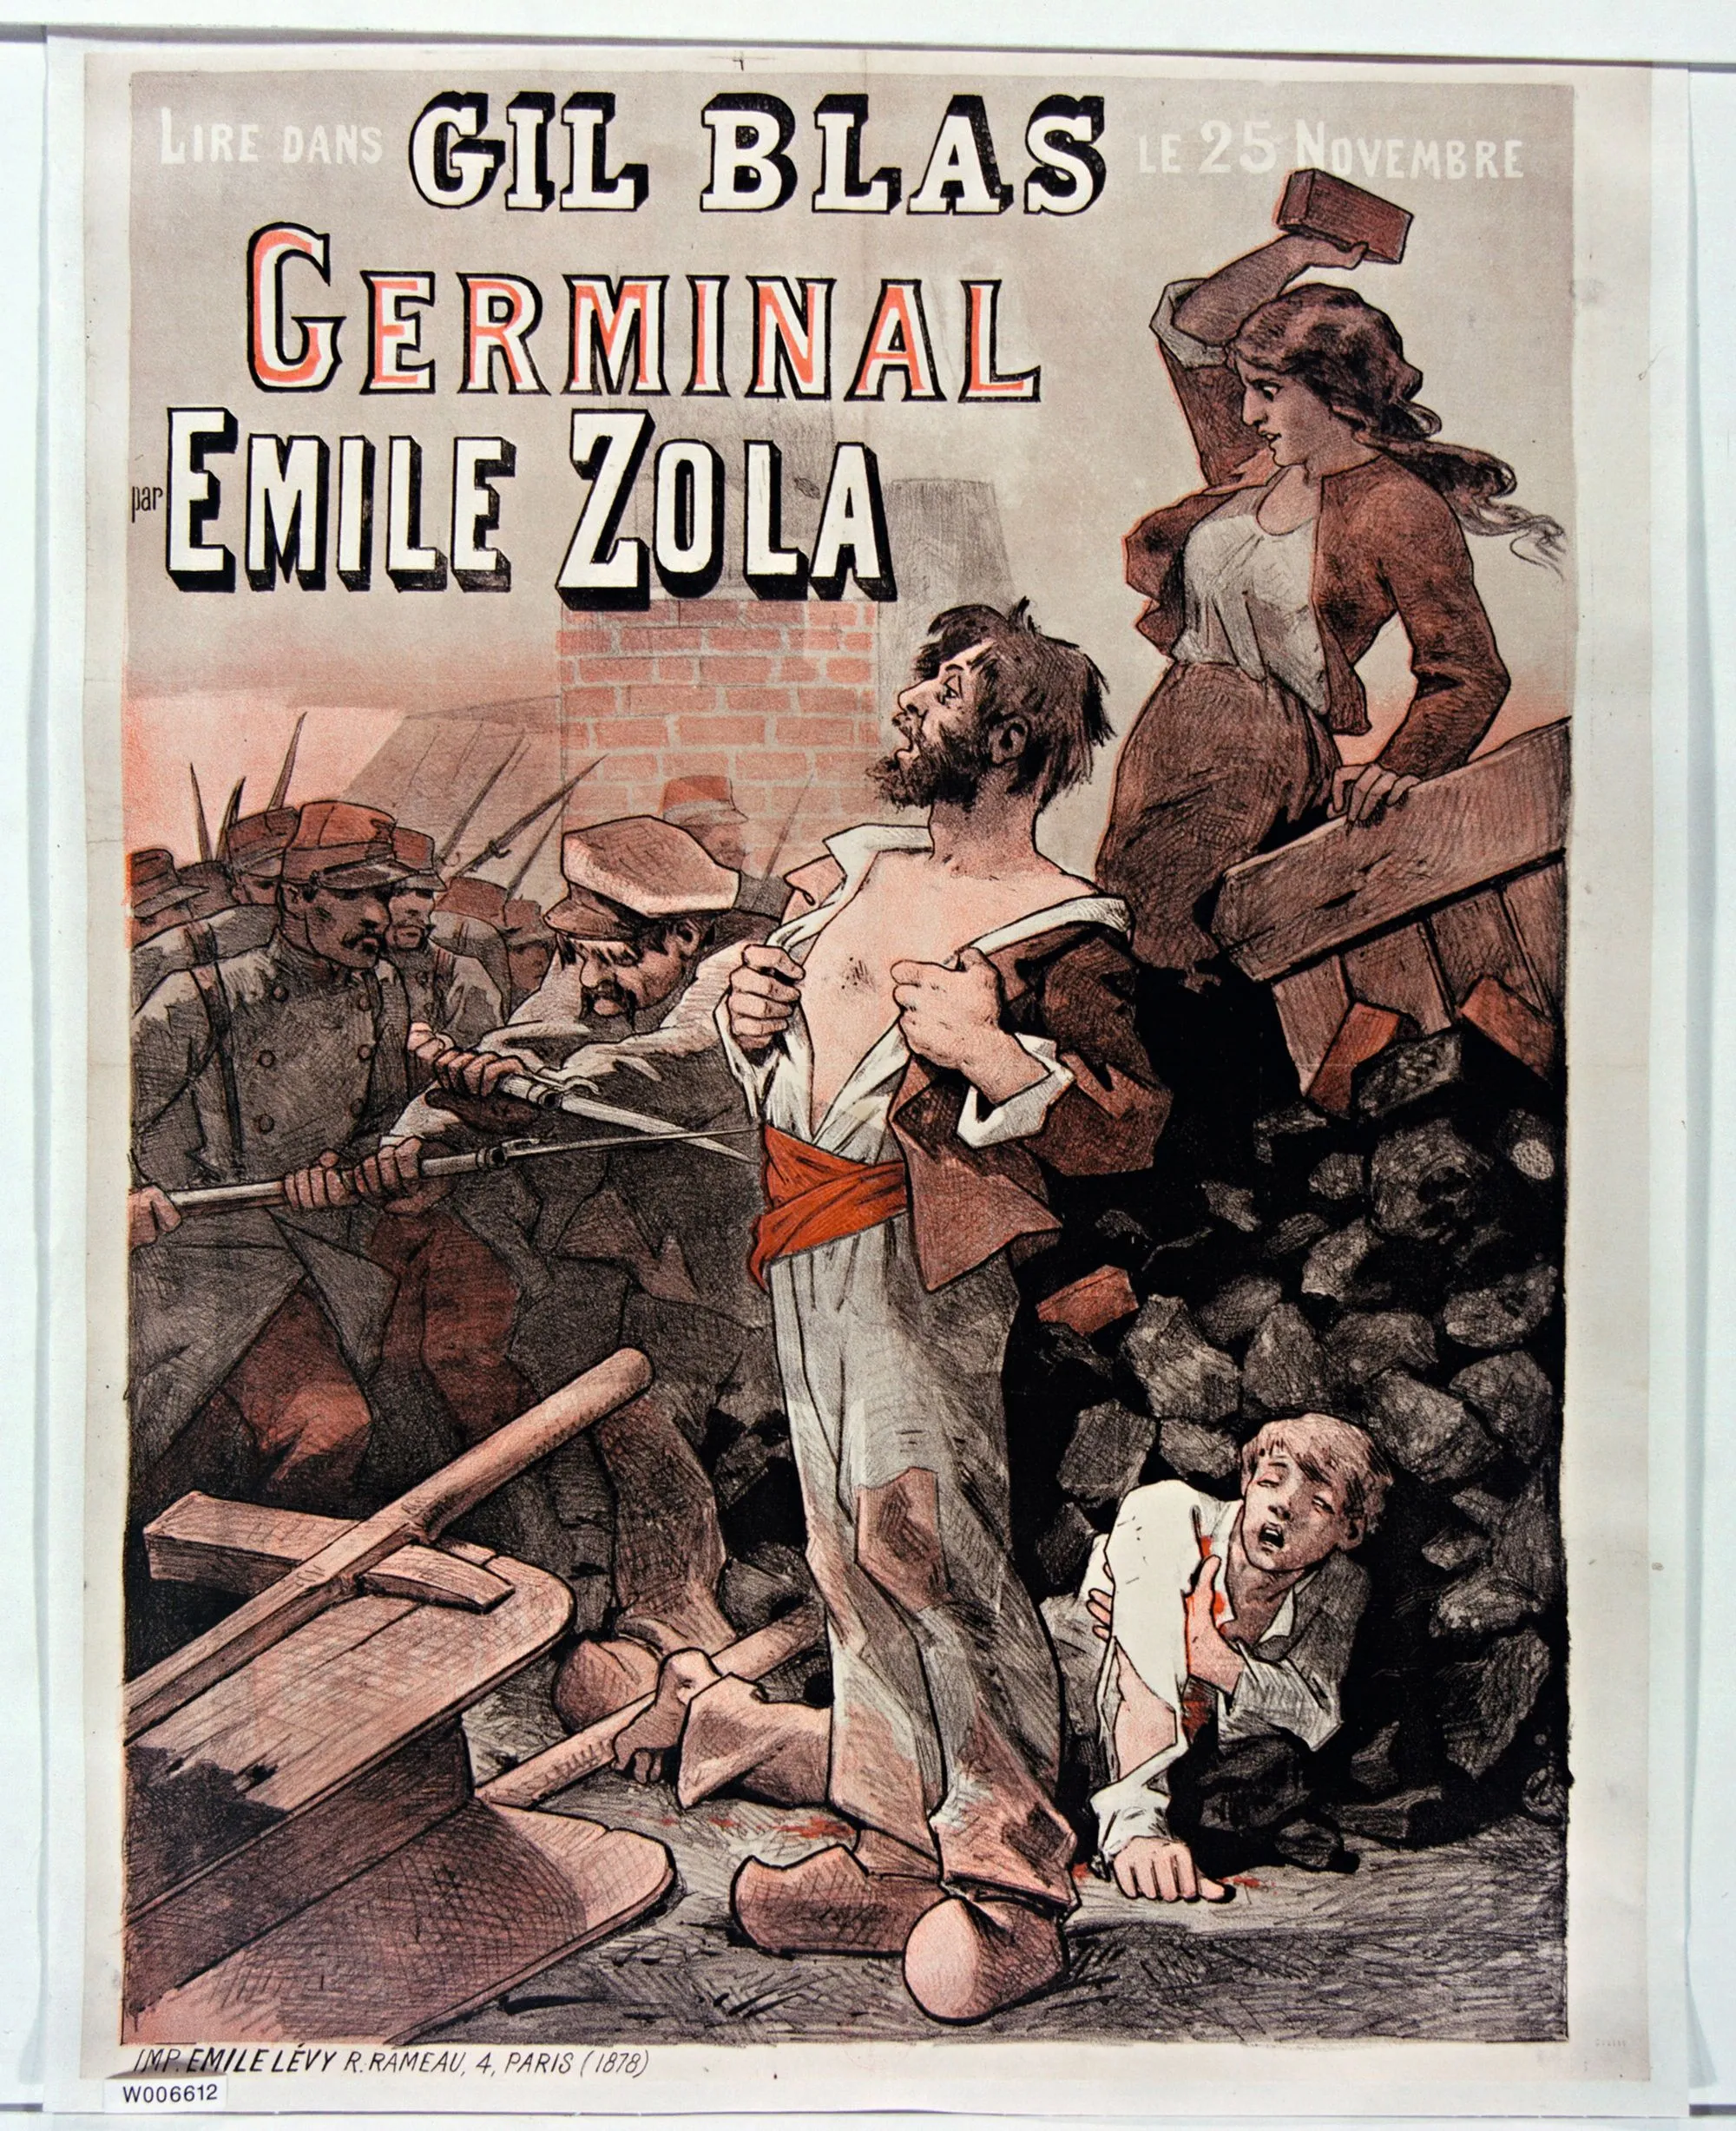 Affiche de Germinal d'Émile Zola, journal Gil Blas, BnF, Paris.